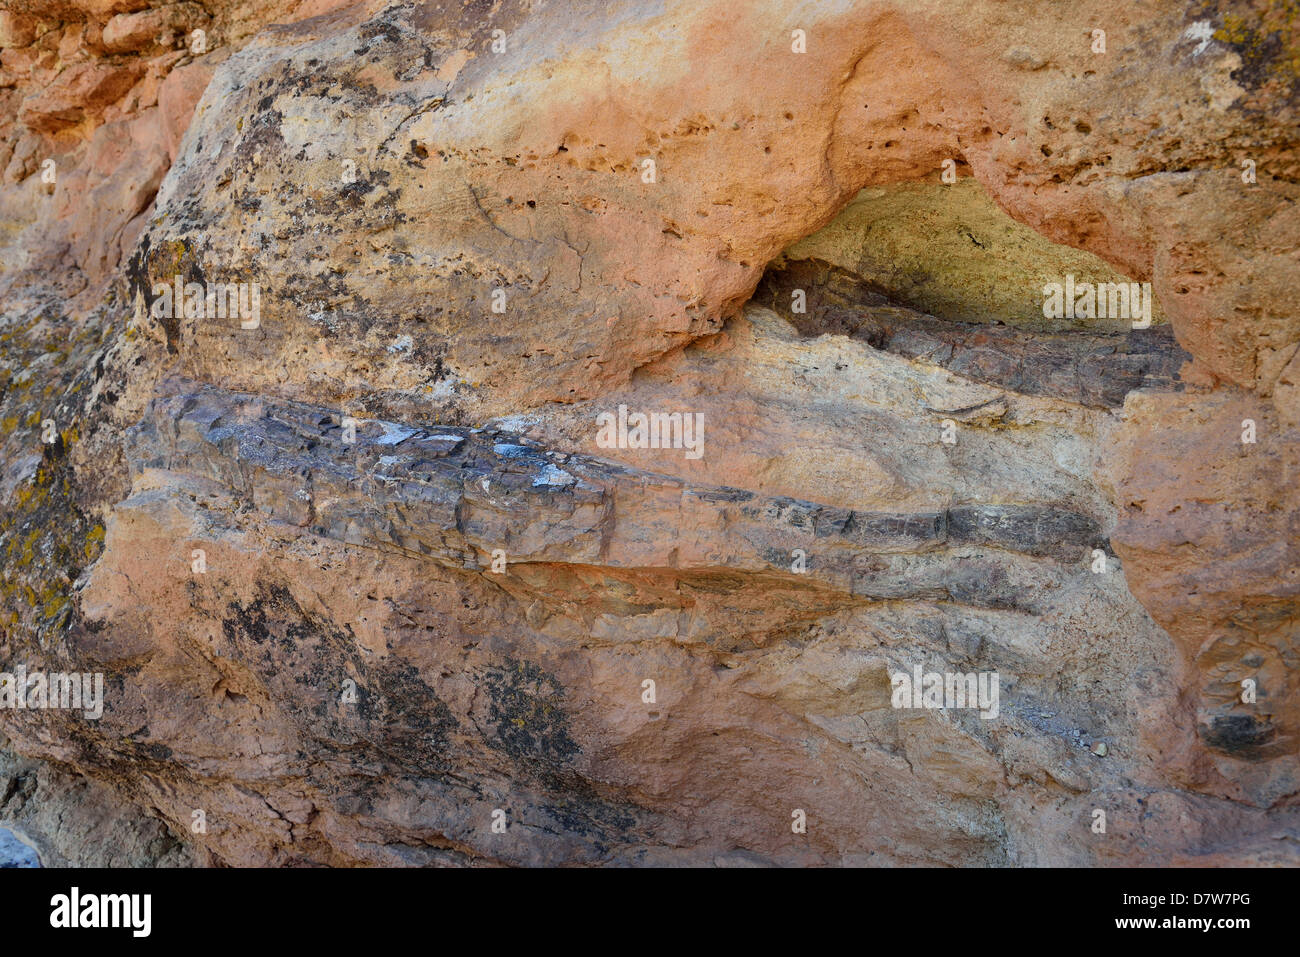 Dinosaurier-Knochen-Fossil in Sandstein eingebettet. Moab, Utah, USA. Stockfoto